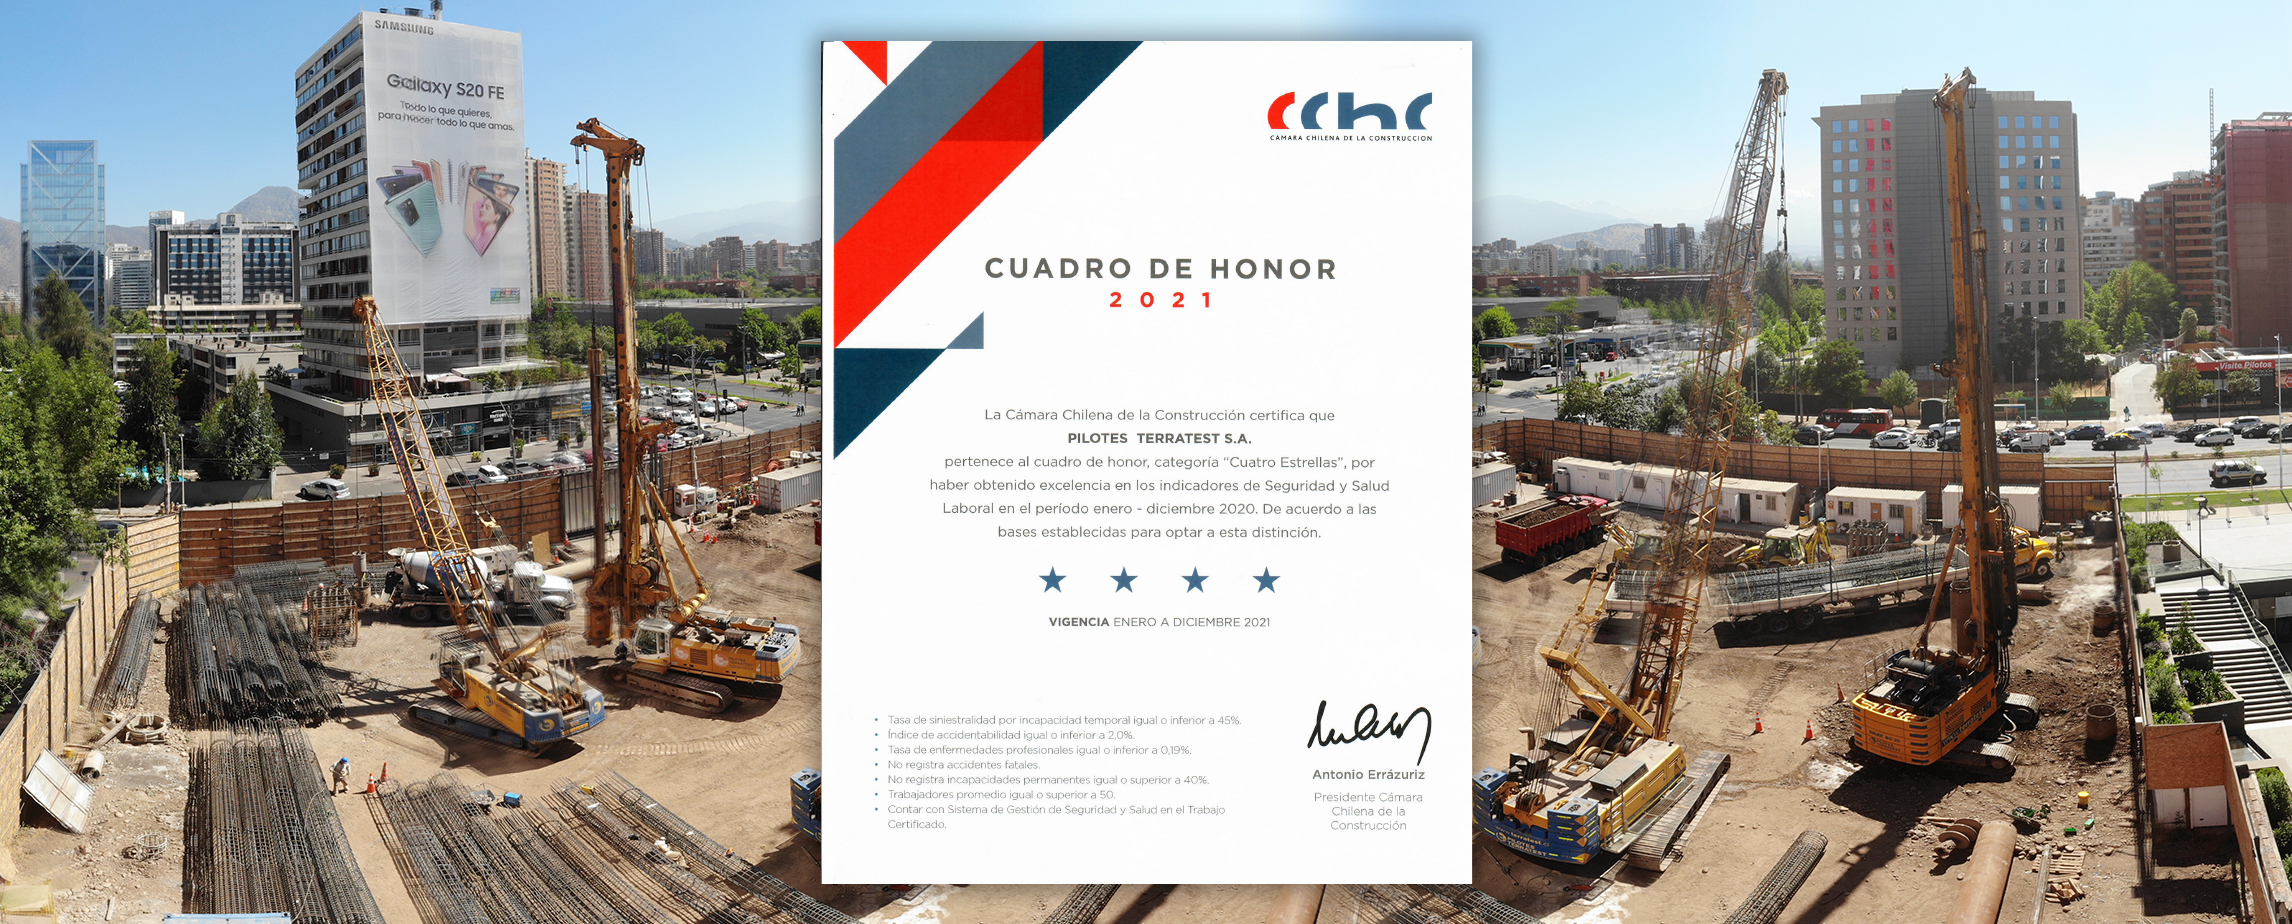 Cuadro de Honor de la Cámara Chilena de la Construcción en la categoría 4 estrellas